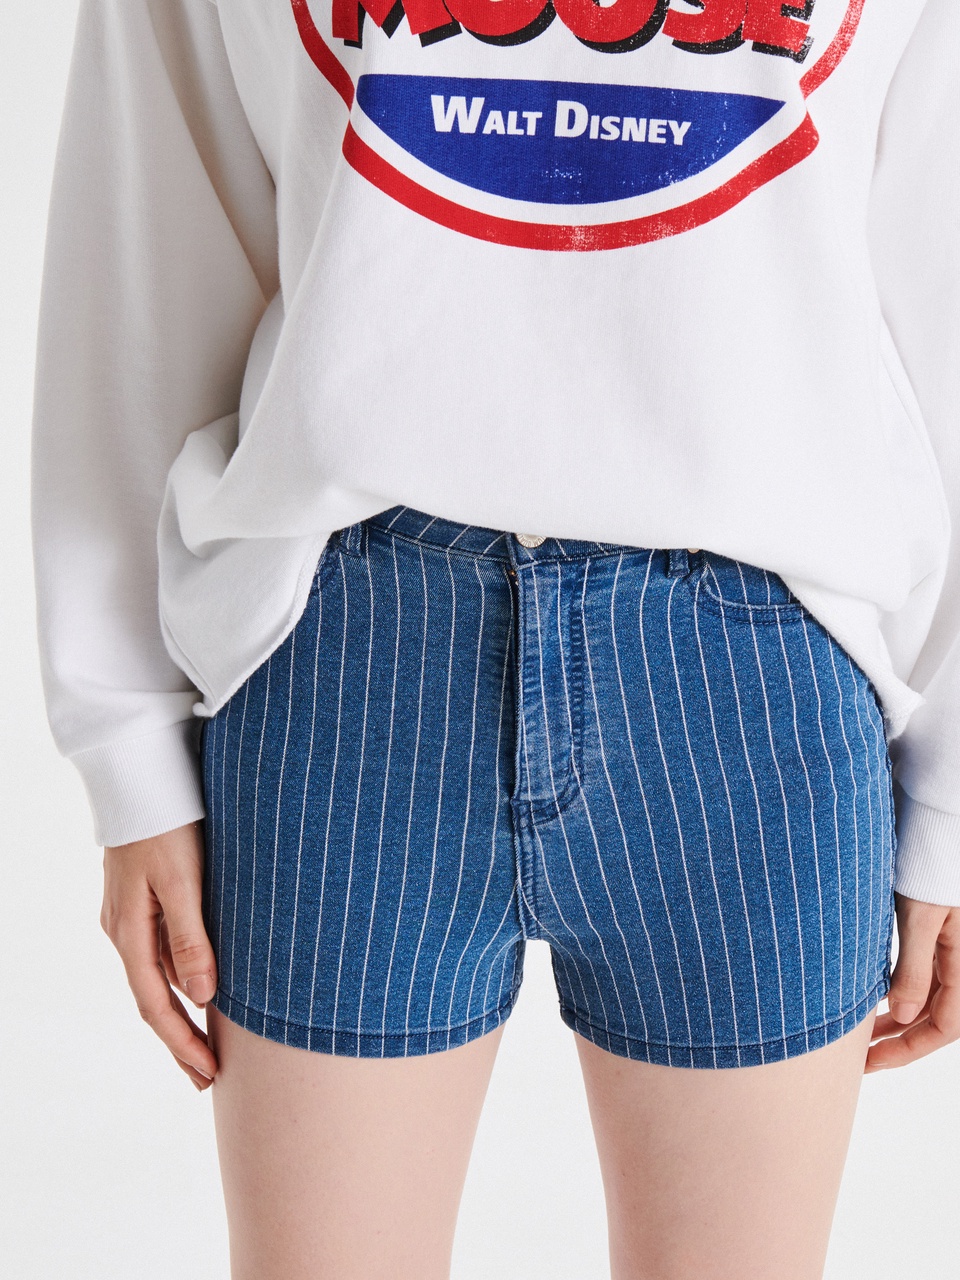 Джинсовые шорты high waist - 699 ₽, заказать онлайн.